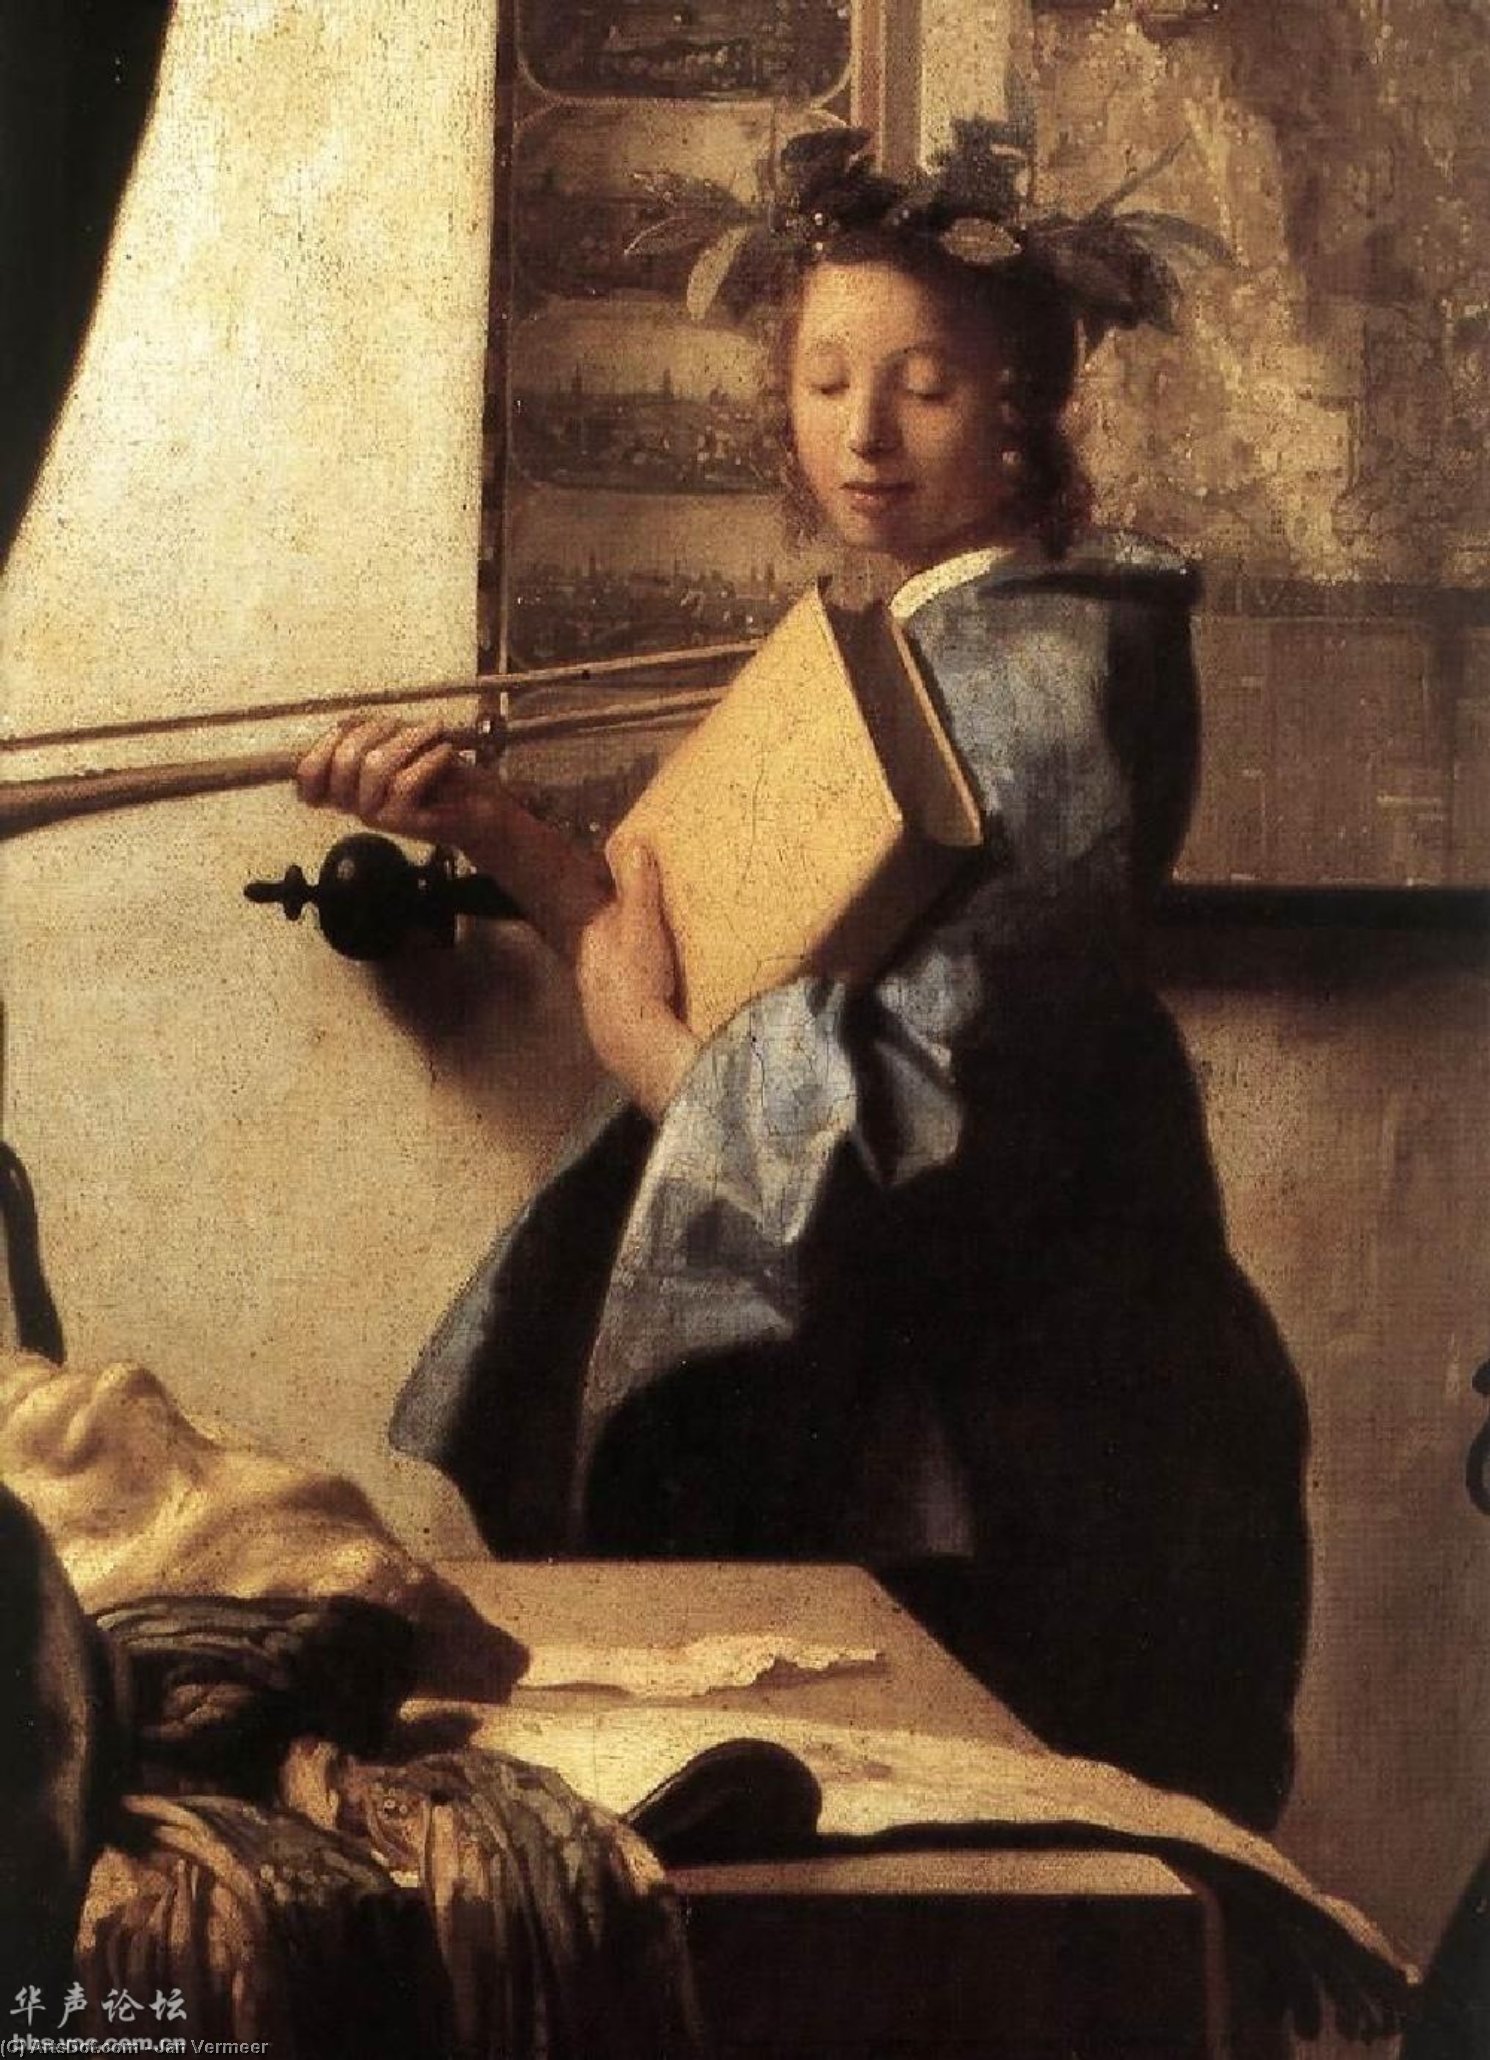 WikiOO.org - Encyclopedia of Fine Arts - Maleri, Artwork Jan Vermeer - The Art of Painting (detail)